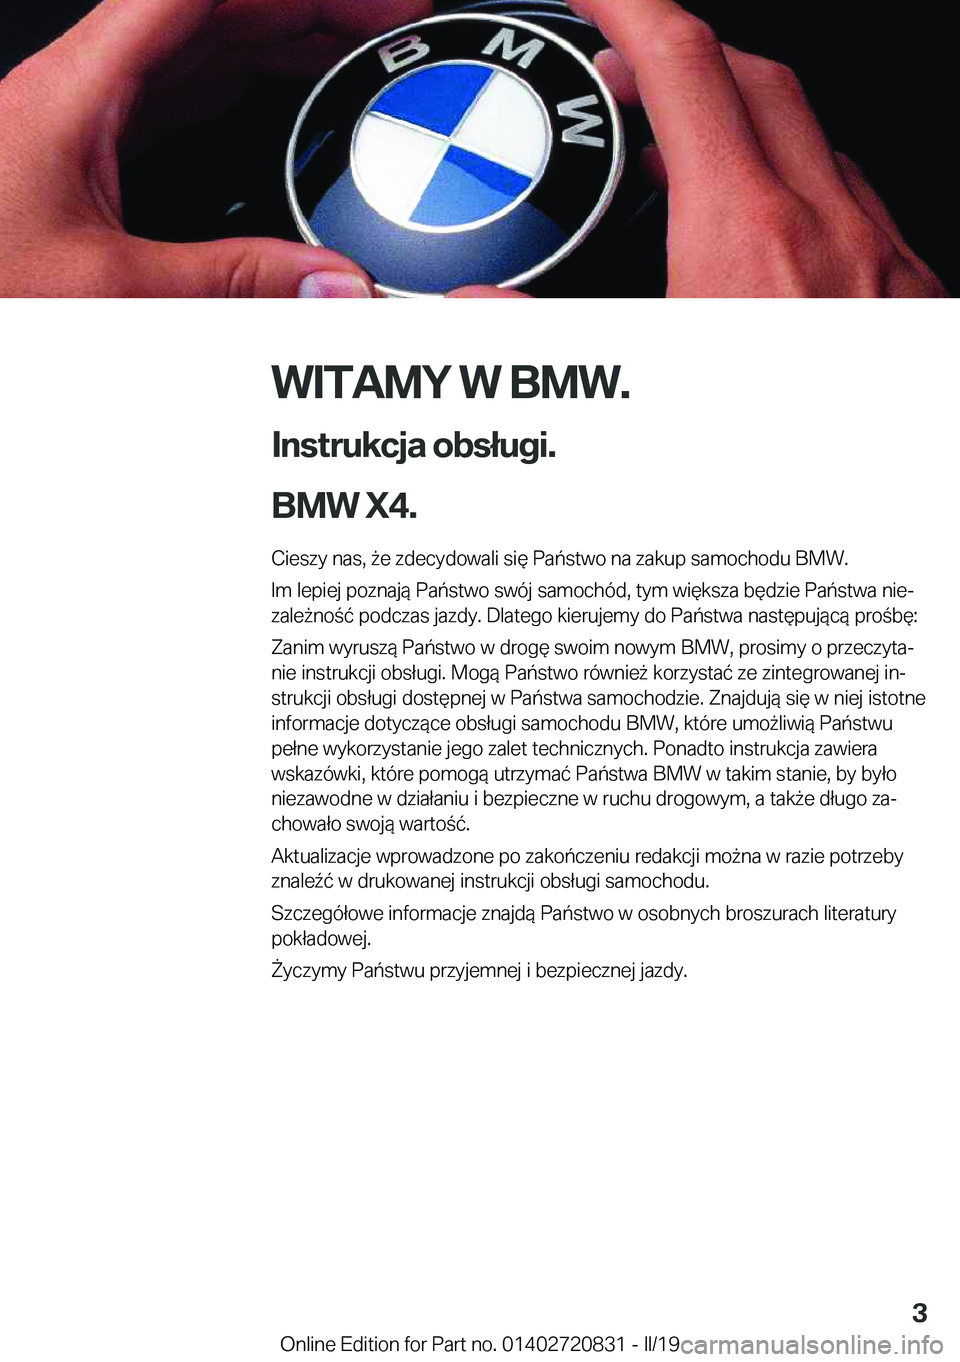 BMW X4 2019  Instrukcja obsługi (in Polish) �W�I�T�A�M�Y��W��B�M�W�.
�I�n�s�t�r�u�k�c�j�a��o�b�s�ł�u�g�i�.
�B�M�W��X�4�. �C�i�e�s�z�y��n�a�s�,�9�e��z�d�e�c�y�d�o�w�a�l�i��s�i�